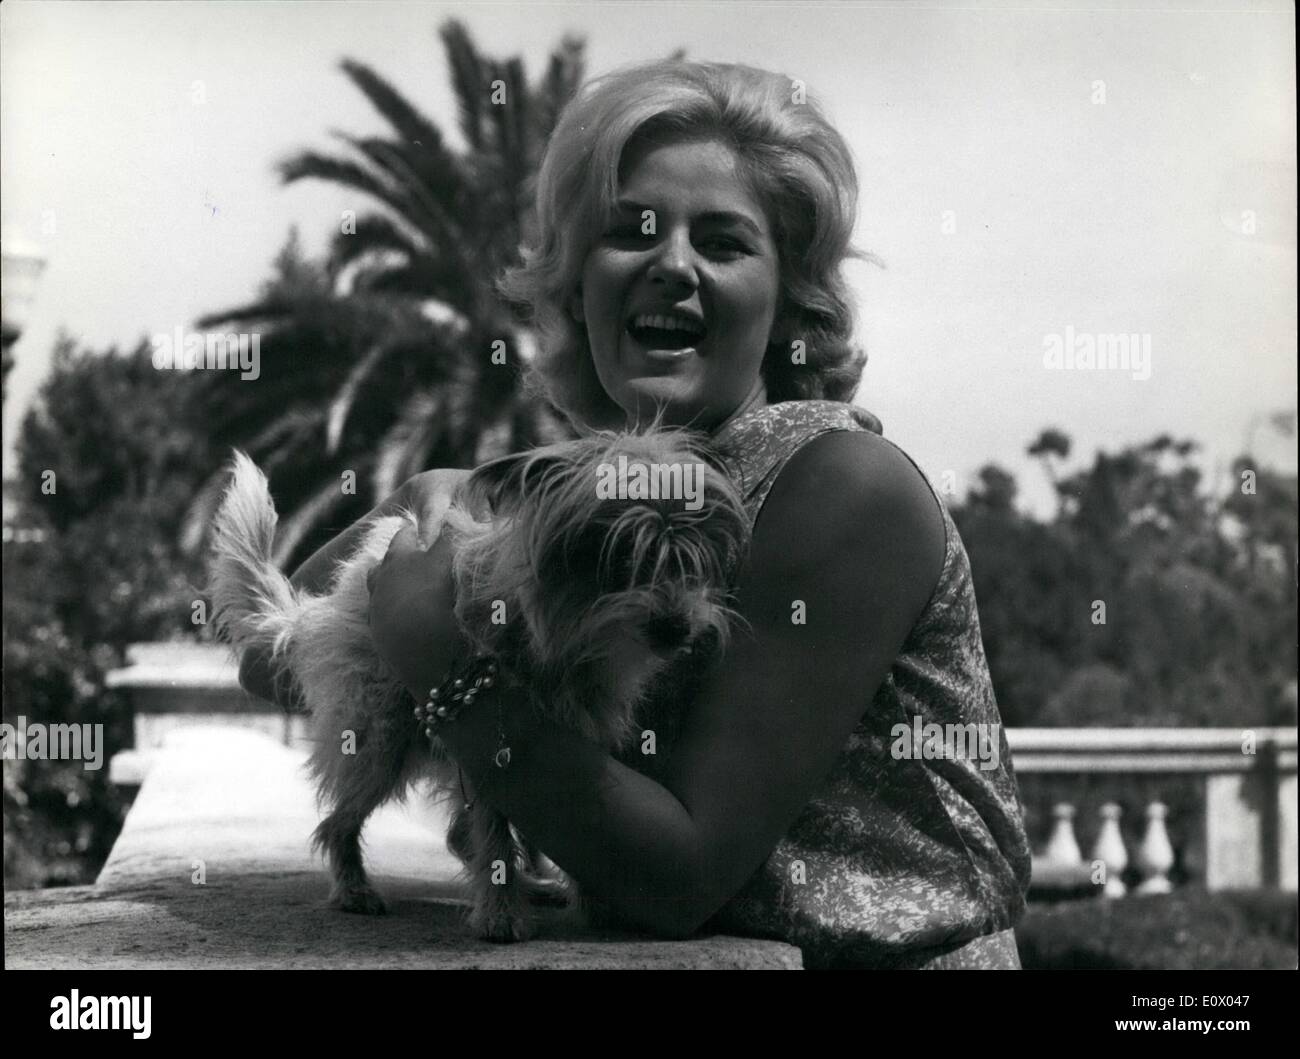 Sett. 09, 1964 - Roma, 11 Settembre 1964: Beba Loncar una giovane e promettente attrice yugoslave tornò a Roma da Belgrad, dopo che aveva completato la sua regola nella british picture: '' il bambino piange per madre". Ora ha iniziato il lavoro di pellicola su '' Ho Bidonati'' ( Le Corniaud ) co-starring attore francese Bourvil e molti altri attori italiani. Appassionato di Roma ha voluto questa mattina touring in su e in giù, appositamente fermandosi a Villa Borghese considerato il più bel giardino della nostra città. Mostra fotografica di Giul 305921. Foto Stock